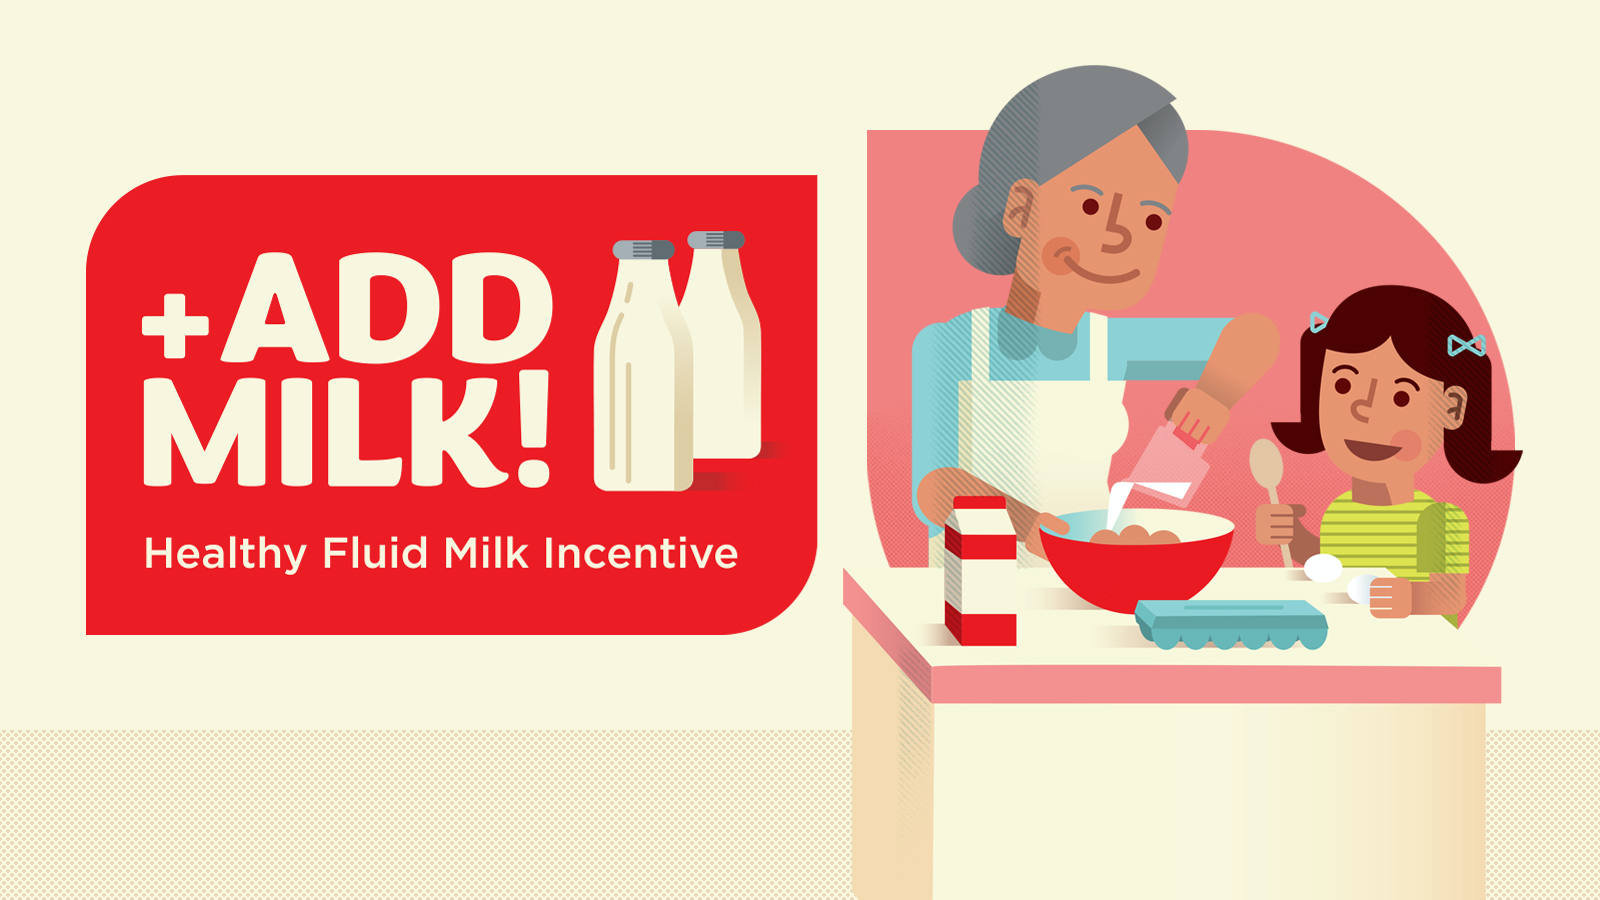 Add Milk! Healthy Fluid Milk Incentive